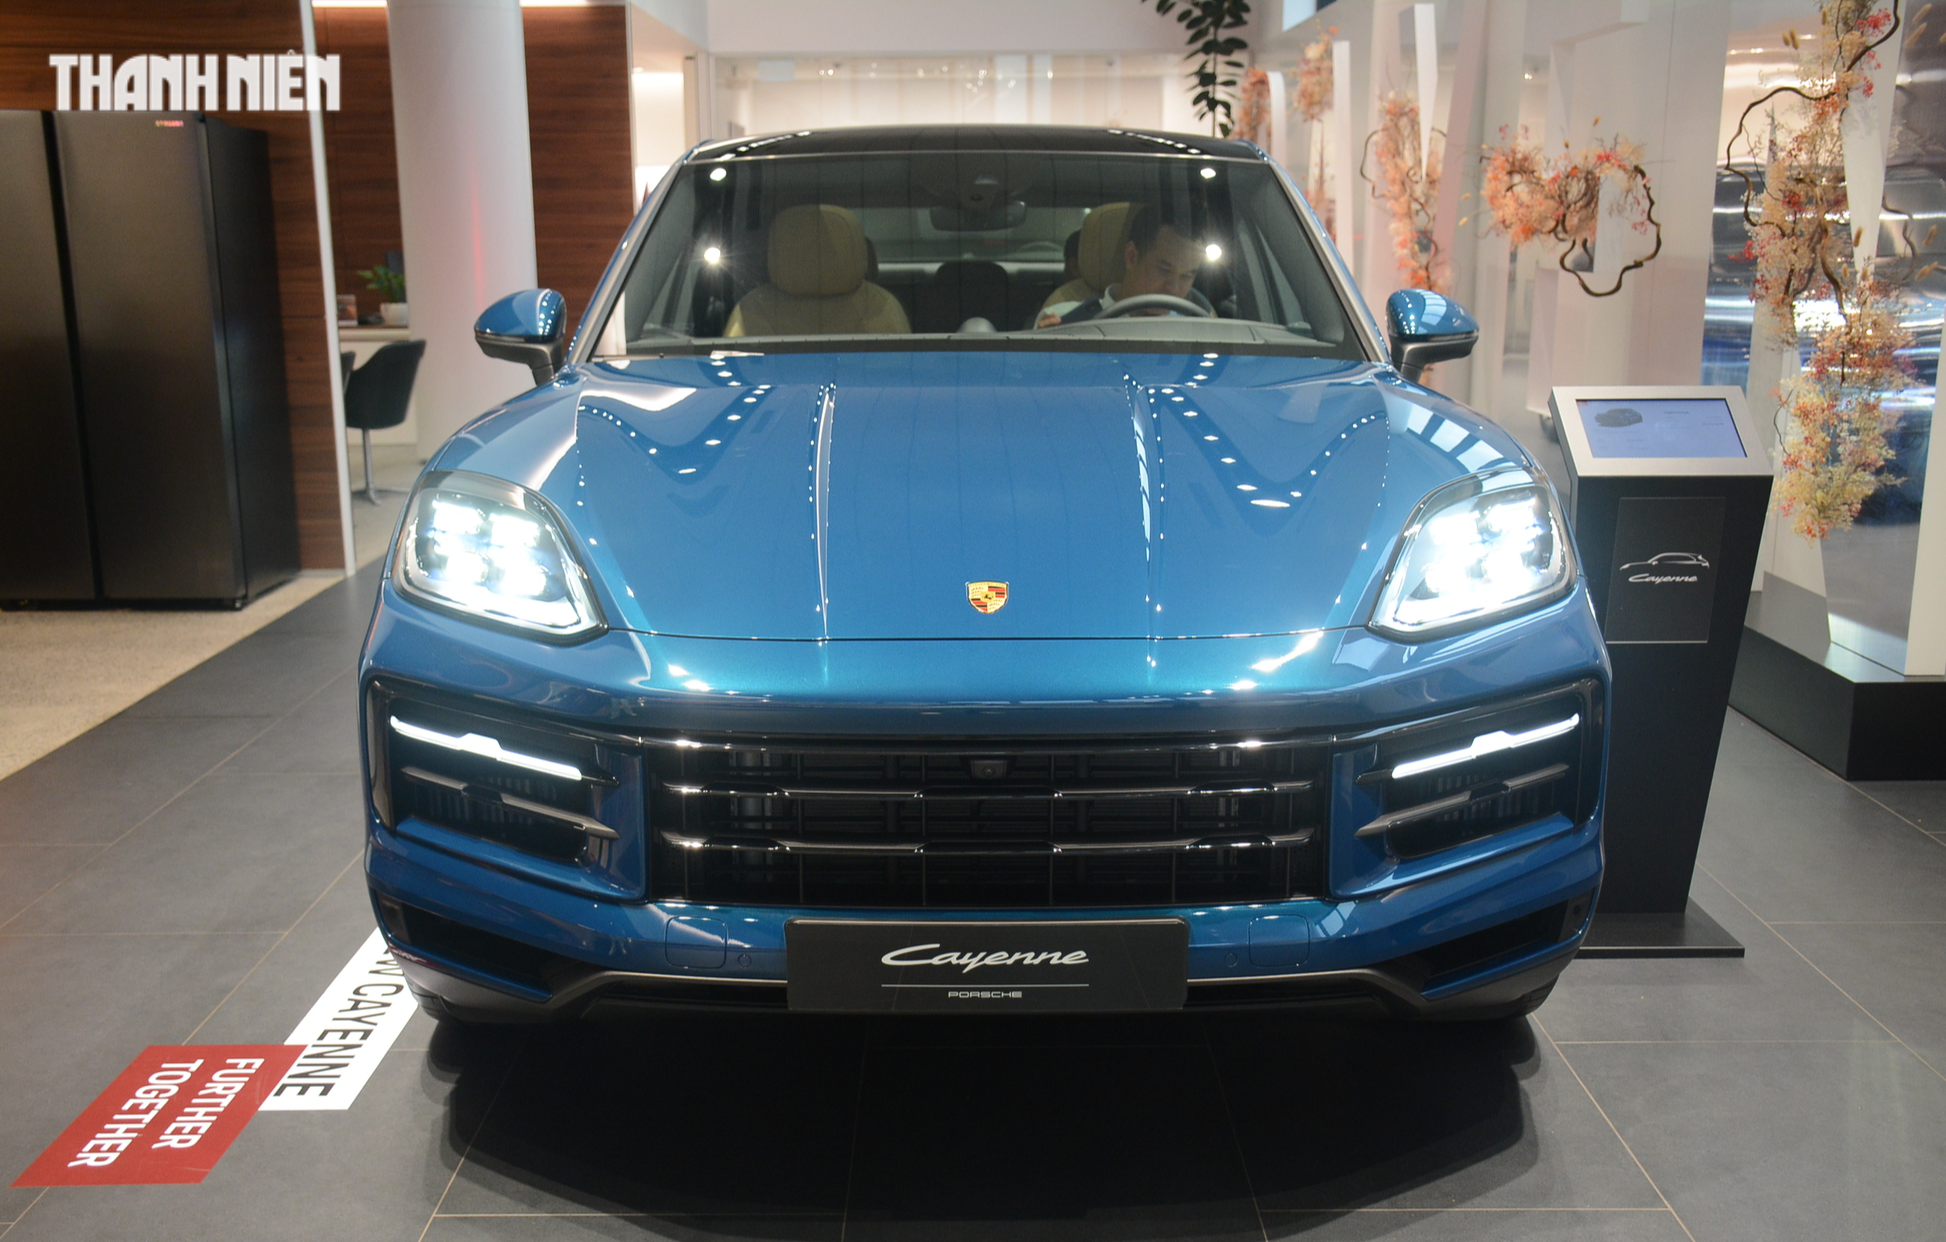 Giá từ 5,56 tỉ đồng, bản nâng cấp Porsche Cayenne về Việt Nam có gì mới? - Ảnh 2.